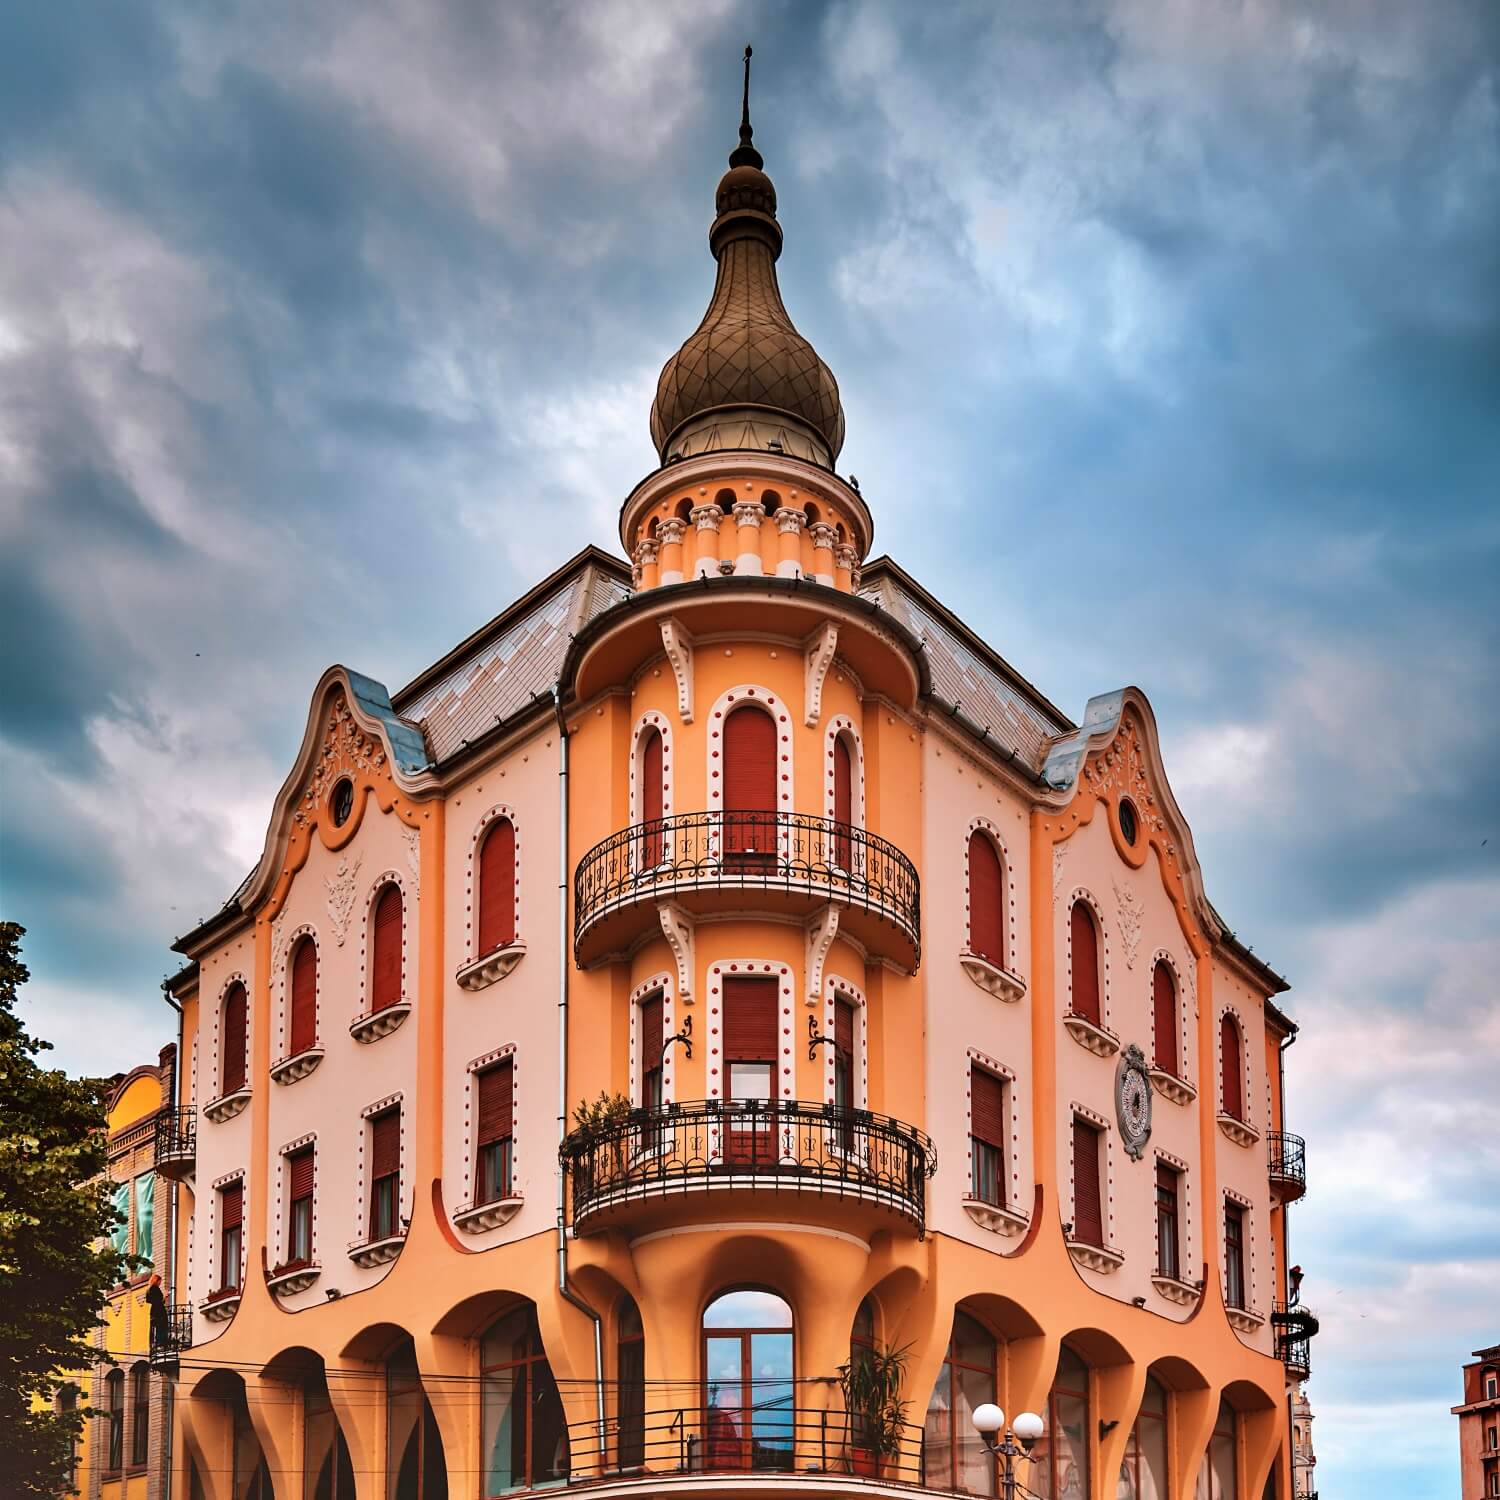 The Poynár House